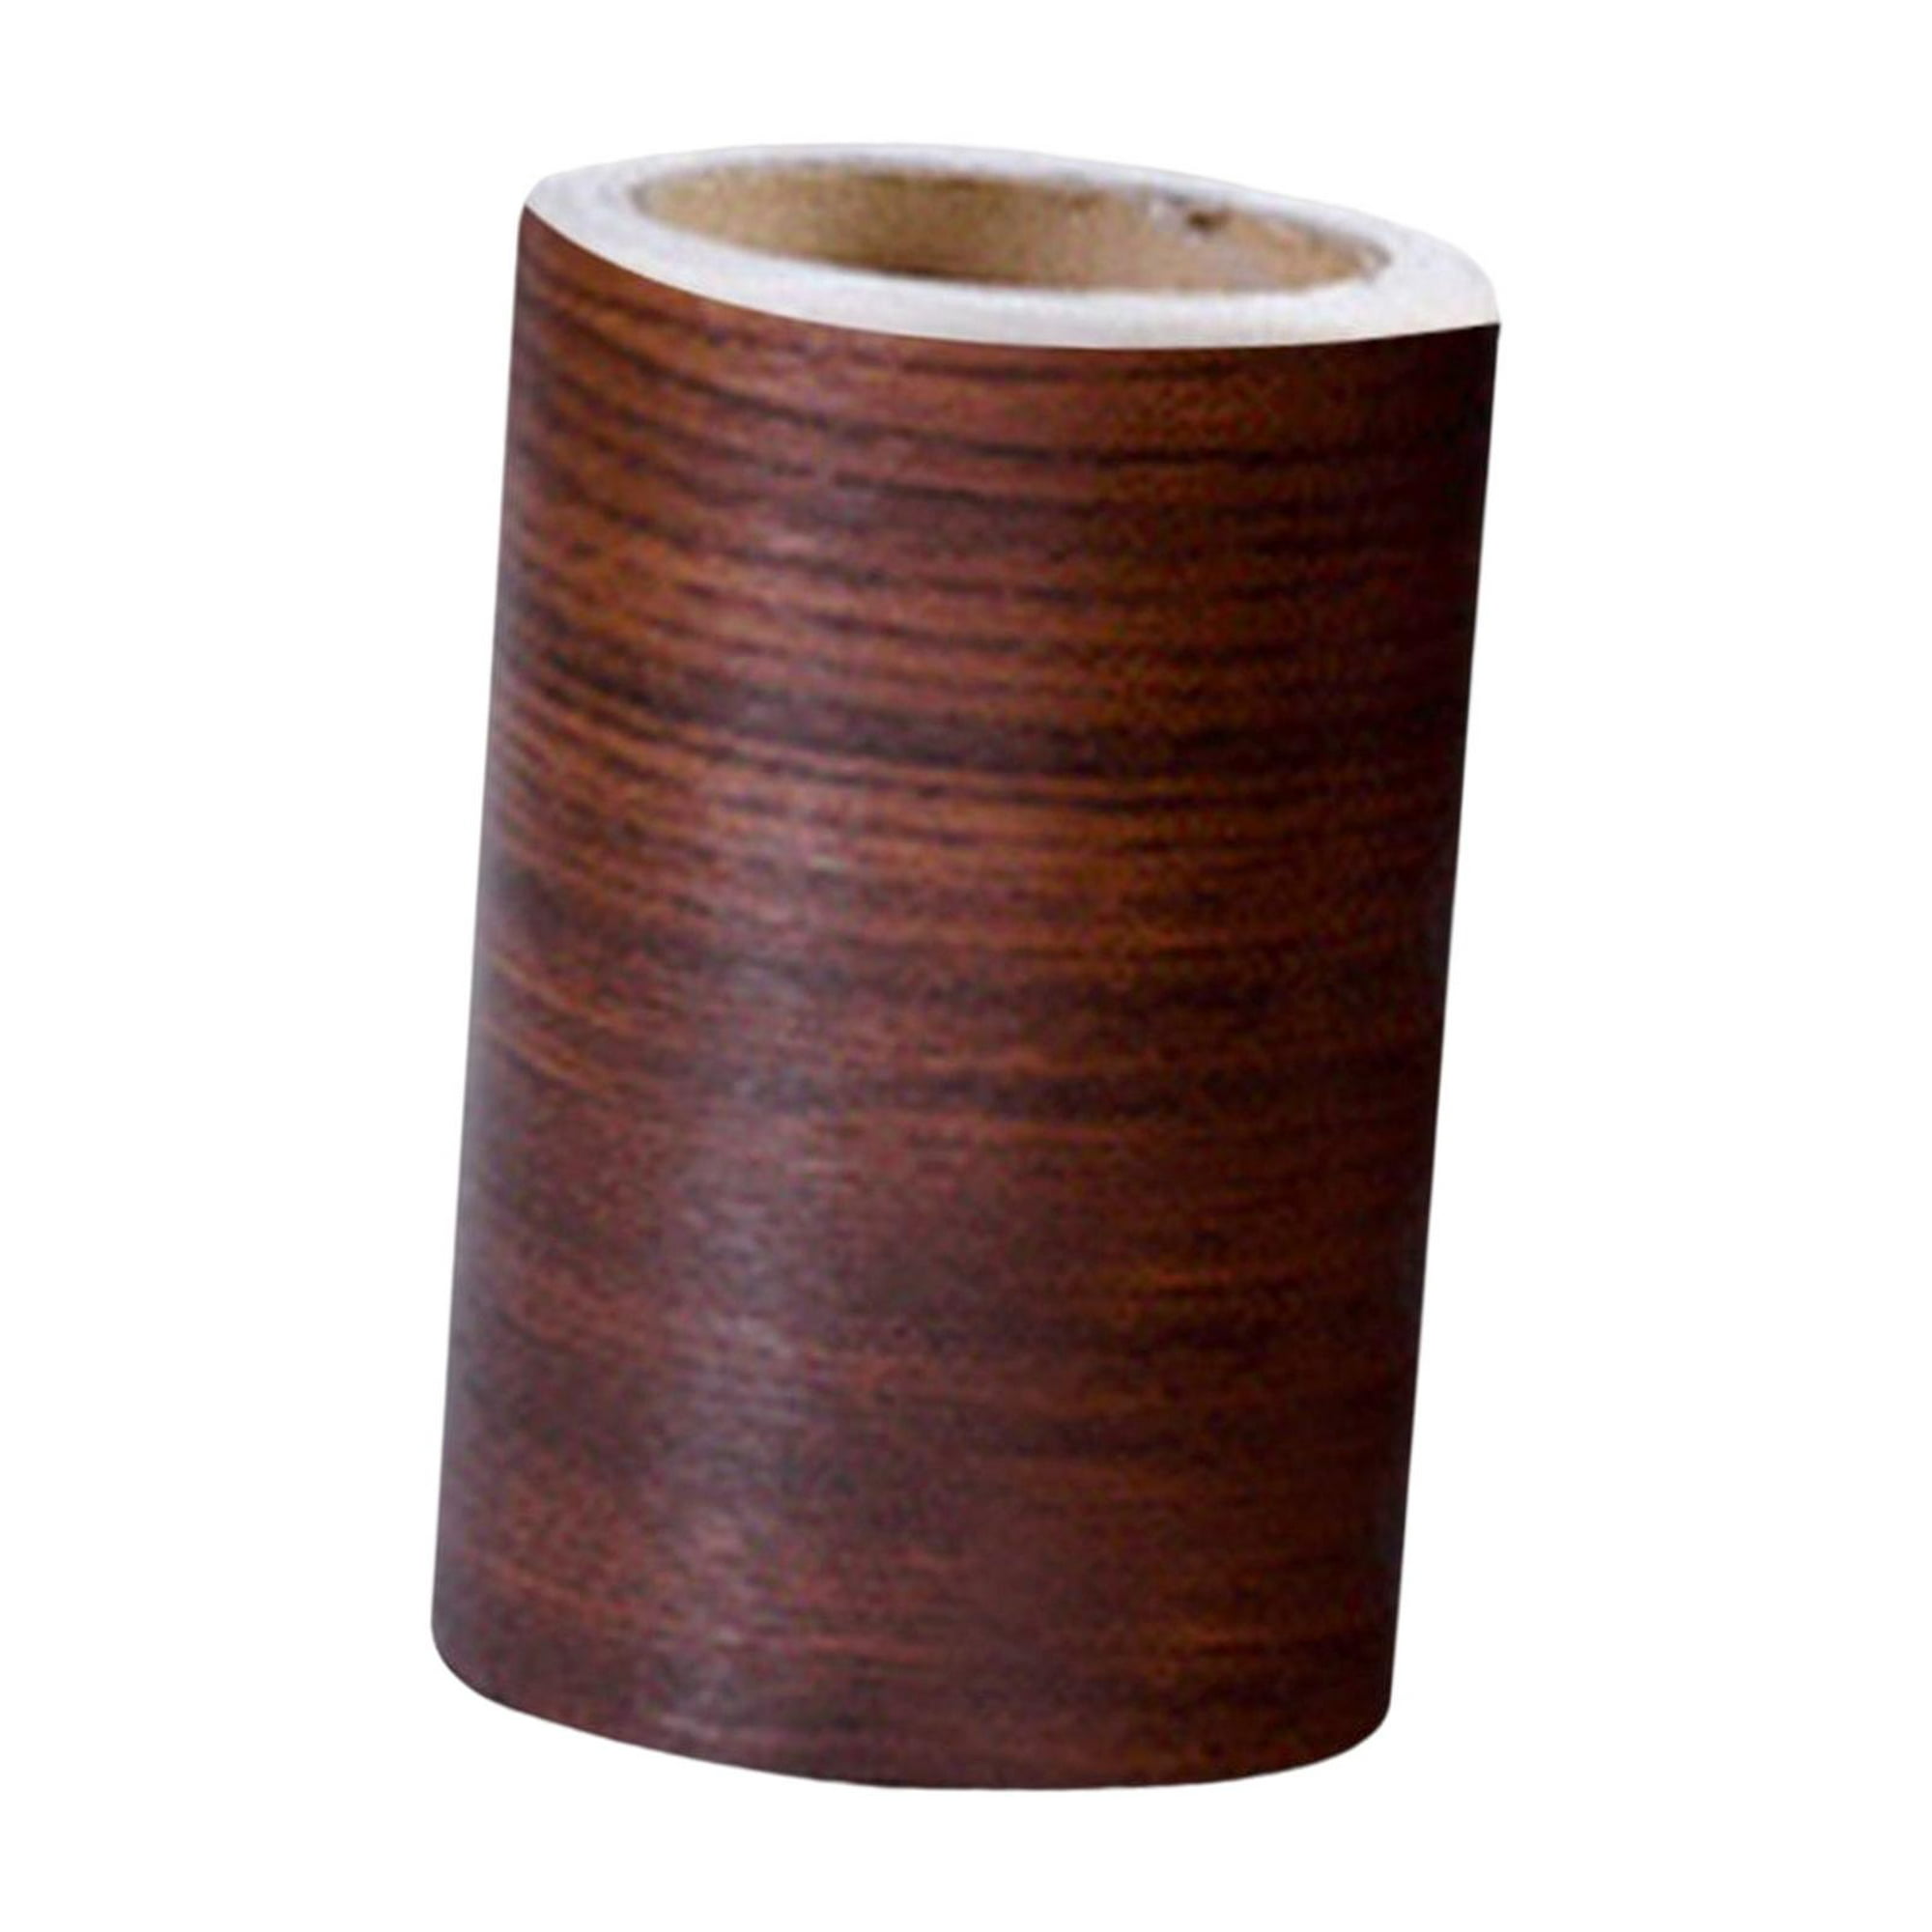 Creativity Street Soporte de cinta adhesiva de madera PAC3861, madera  natural, 9.6 x 5.9 x 6 pulgadas, 1 unidad, marrón